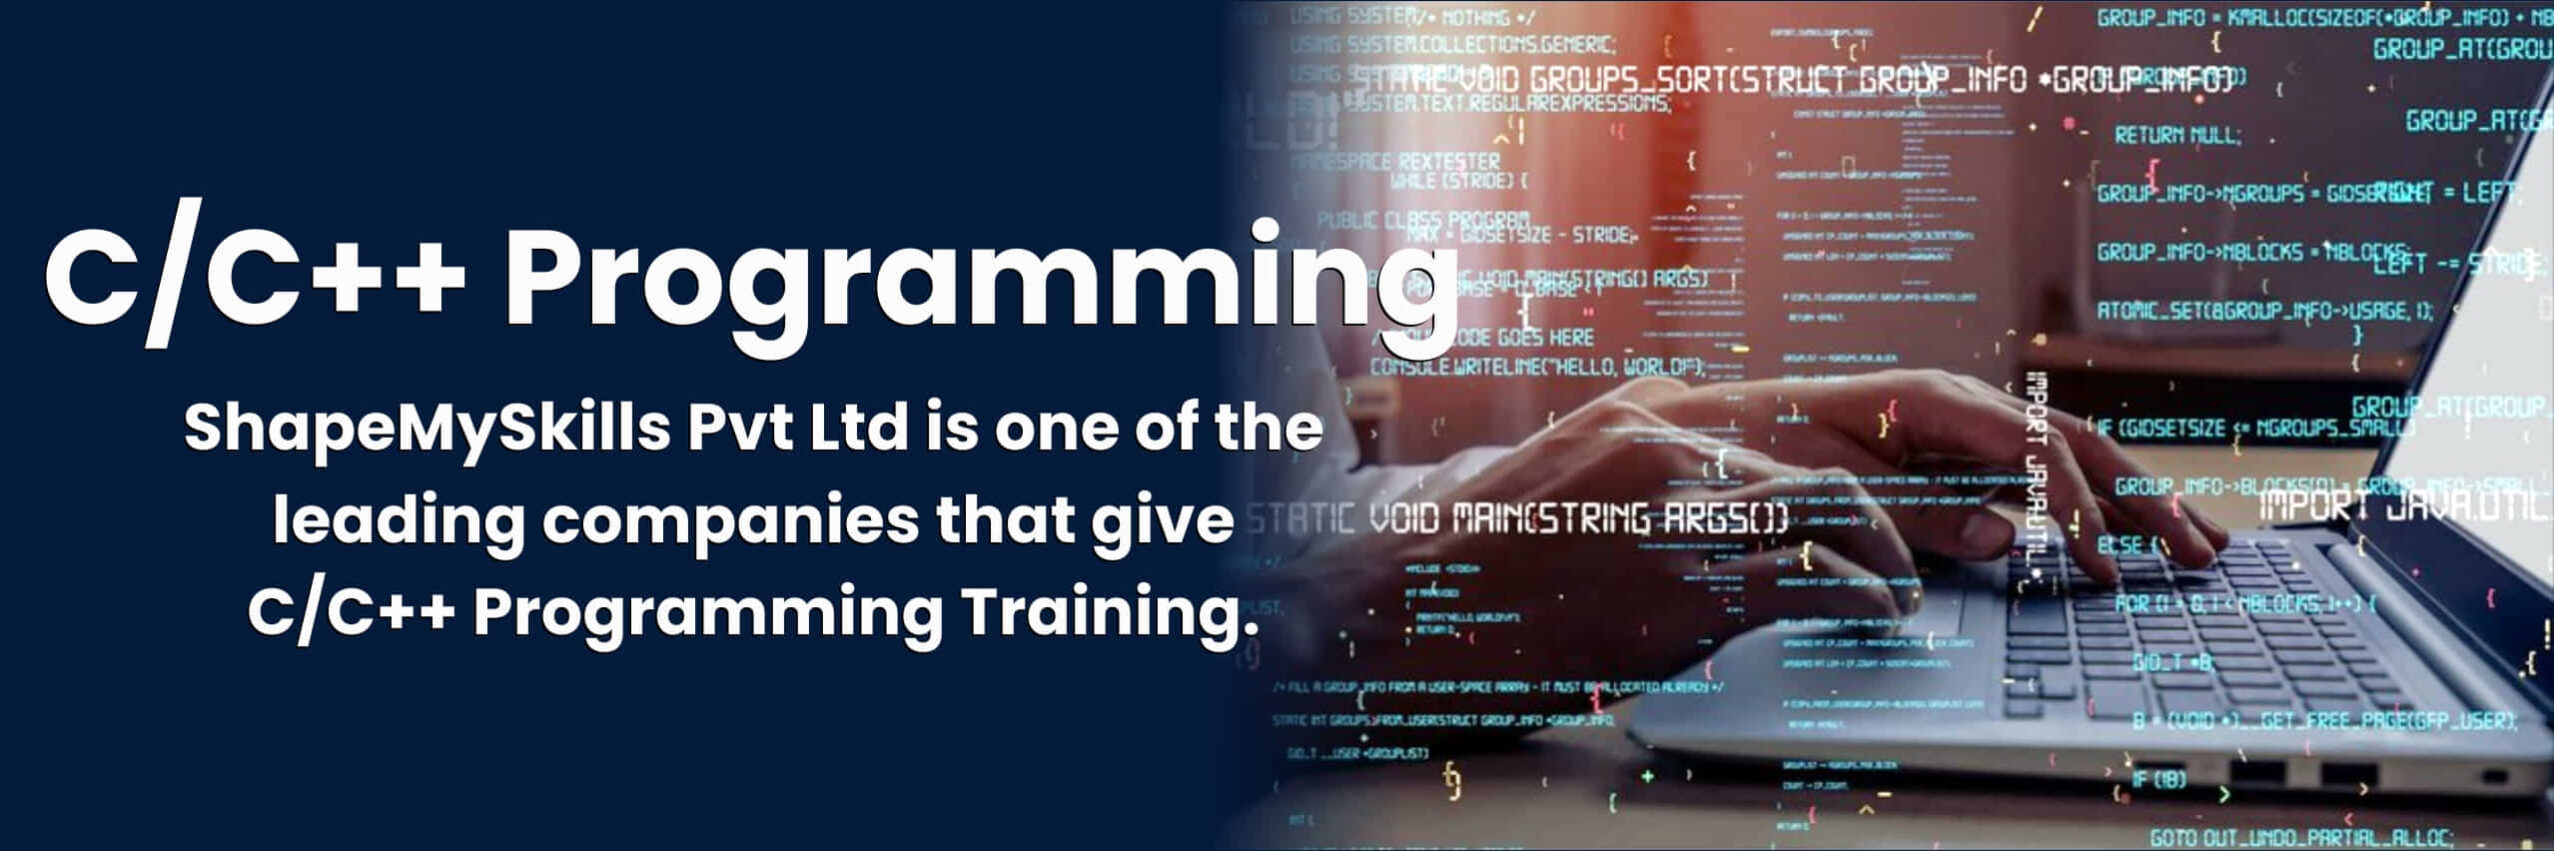 C/C++ Programming Training in Noida C/C++ Programming Training in Delhi C/C++ Programming Online Training